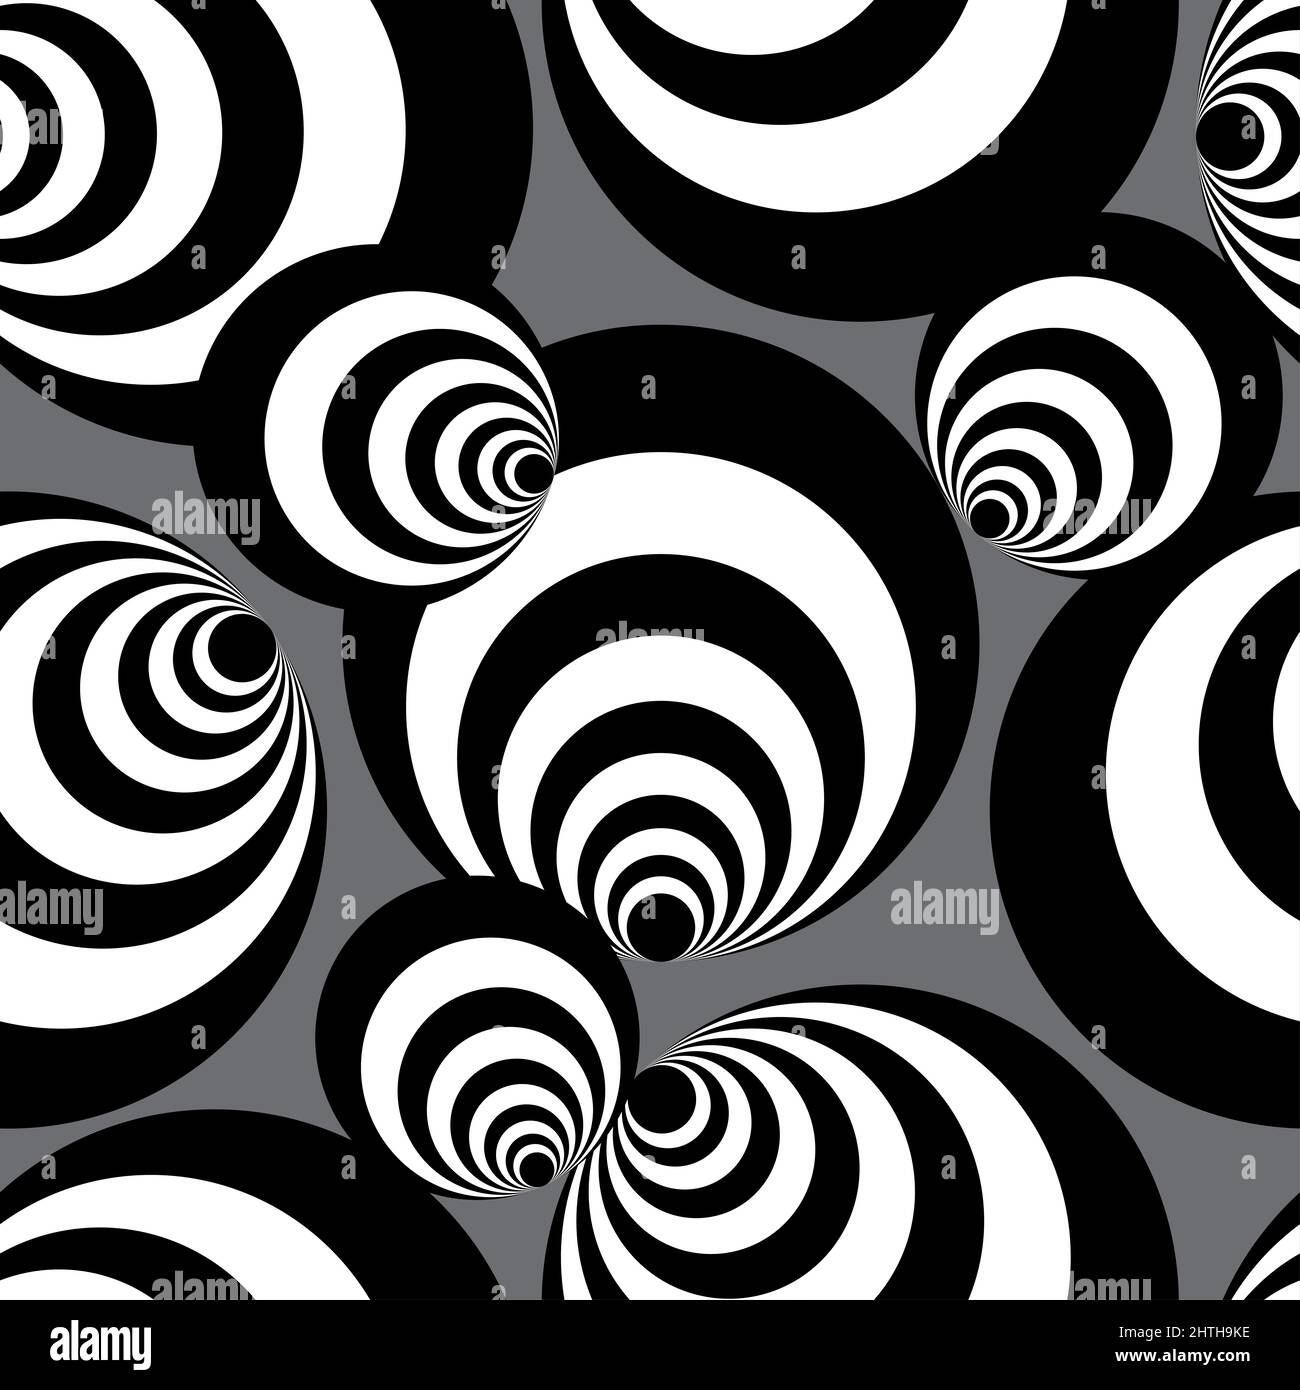 Nahtlose schwarz-weiße Spiralkugeln oder schwarz-weiße Kreis, Illusion nahtloses Muster, dunkelgrauer Hintergrund. Stockfoto